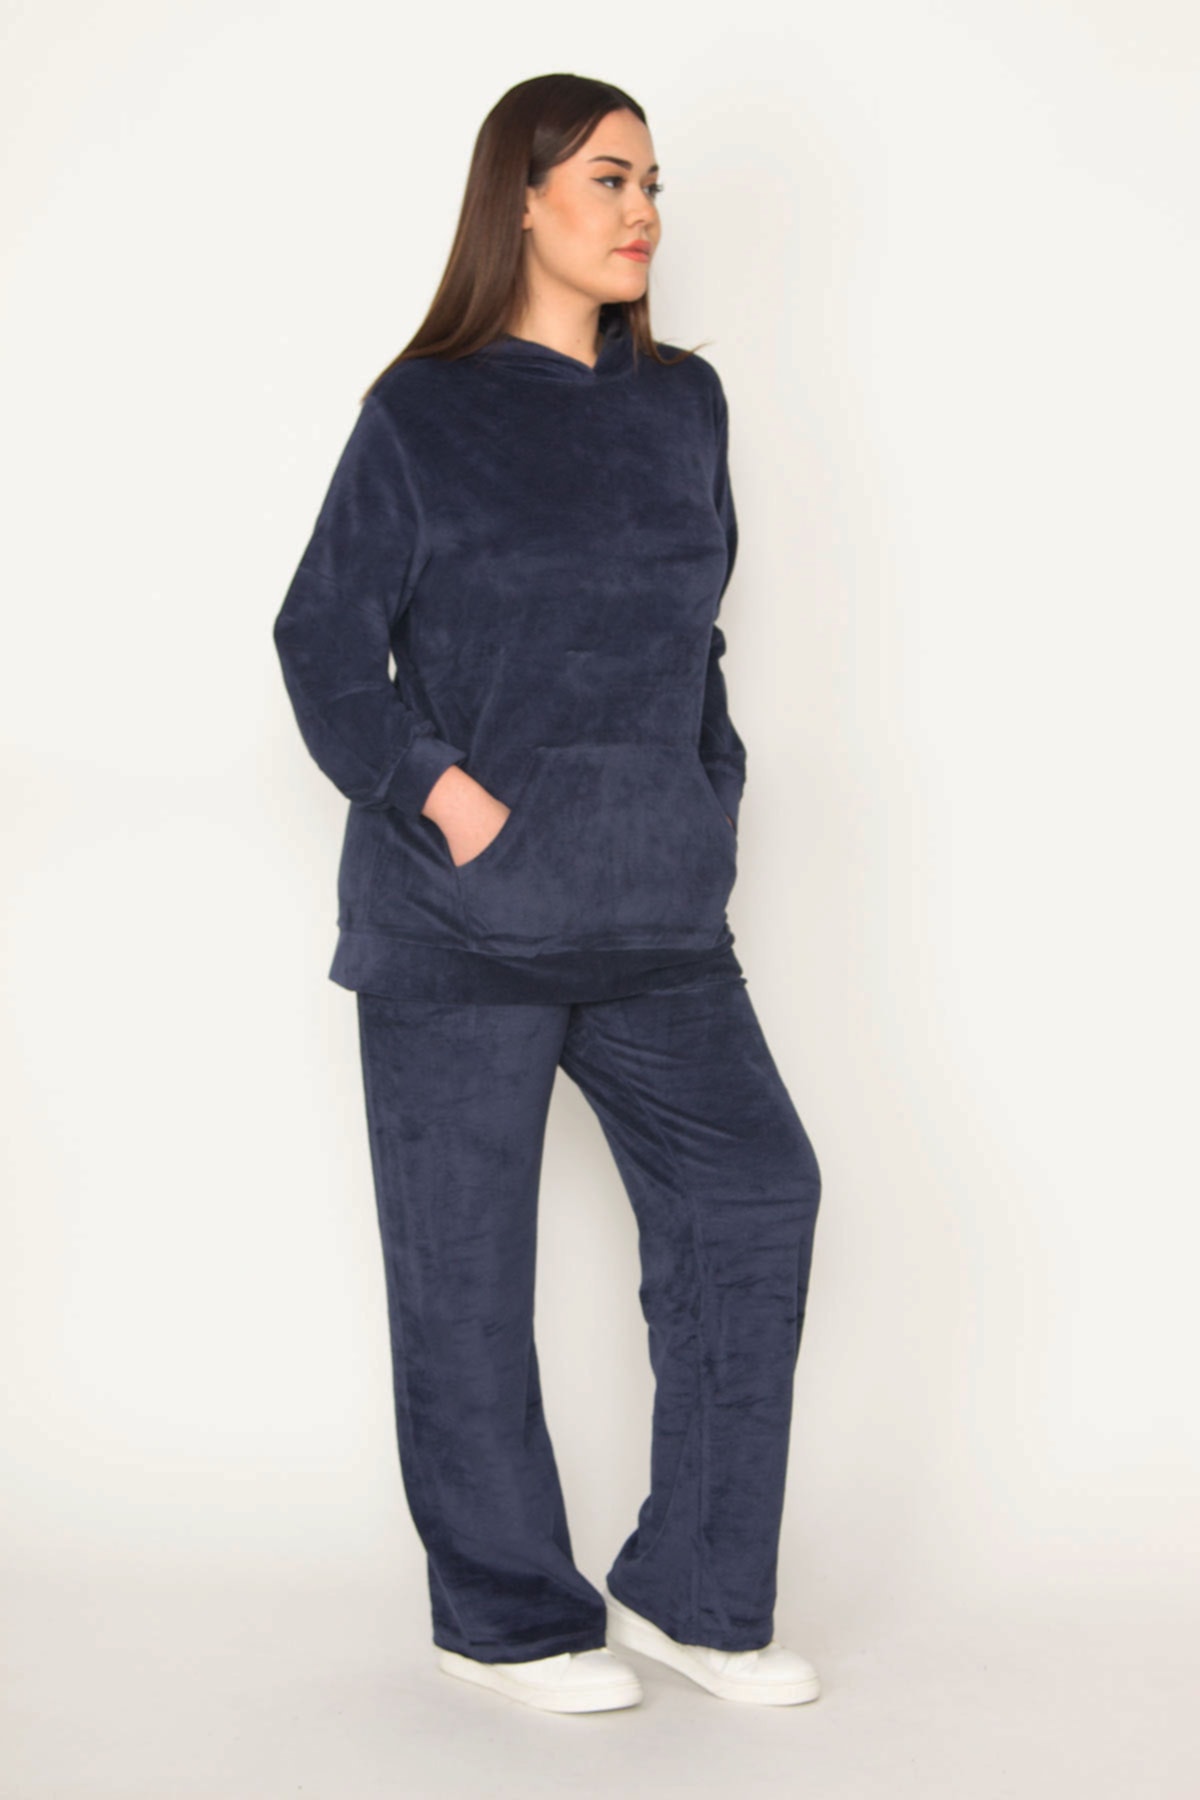 Şans Plus Size Sweatsuit Set - Navy blue - Regular fit